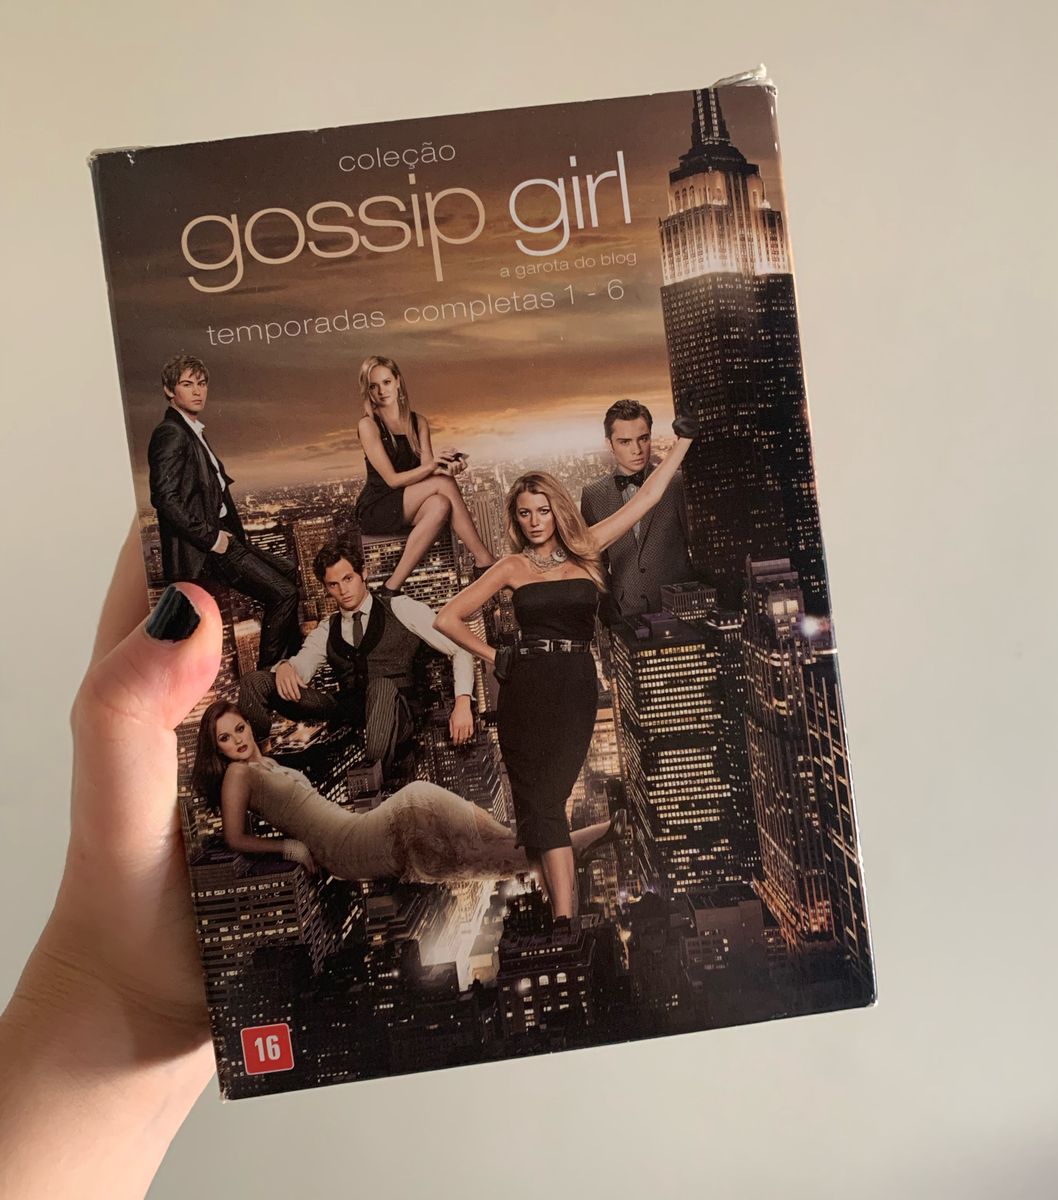 Box Completo Gossip Girl (Dvd), Filme e Série Warner Bros Usado 81682793